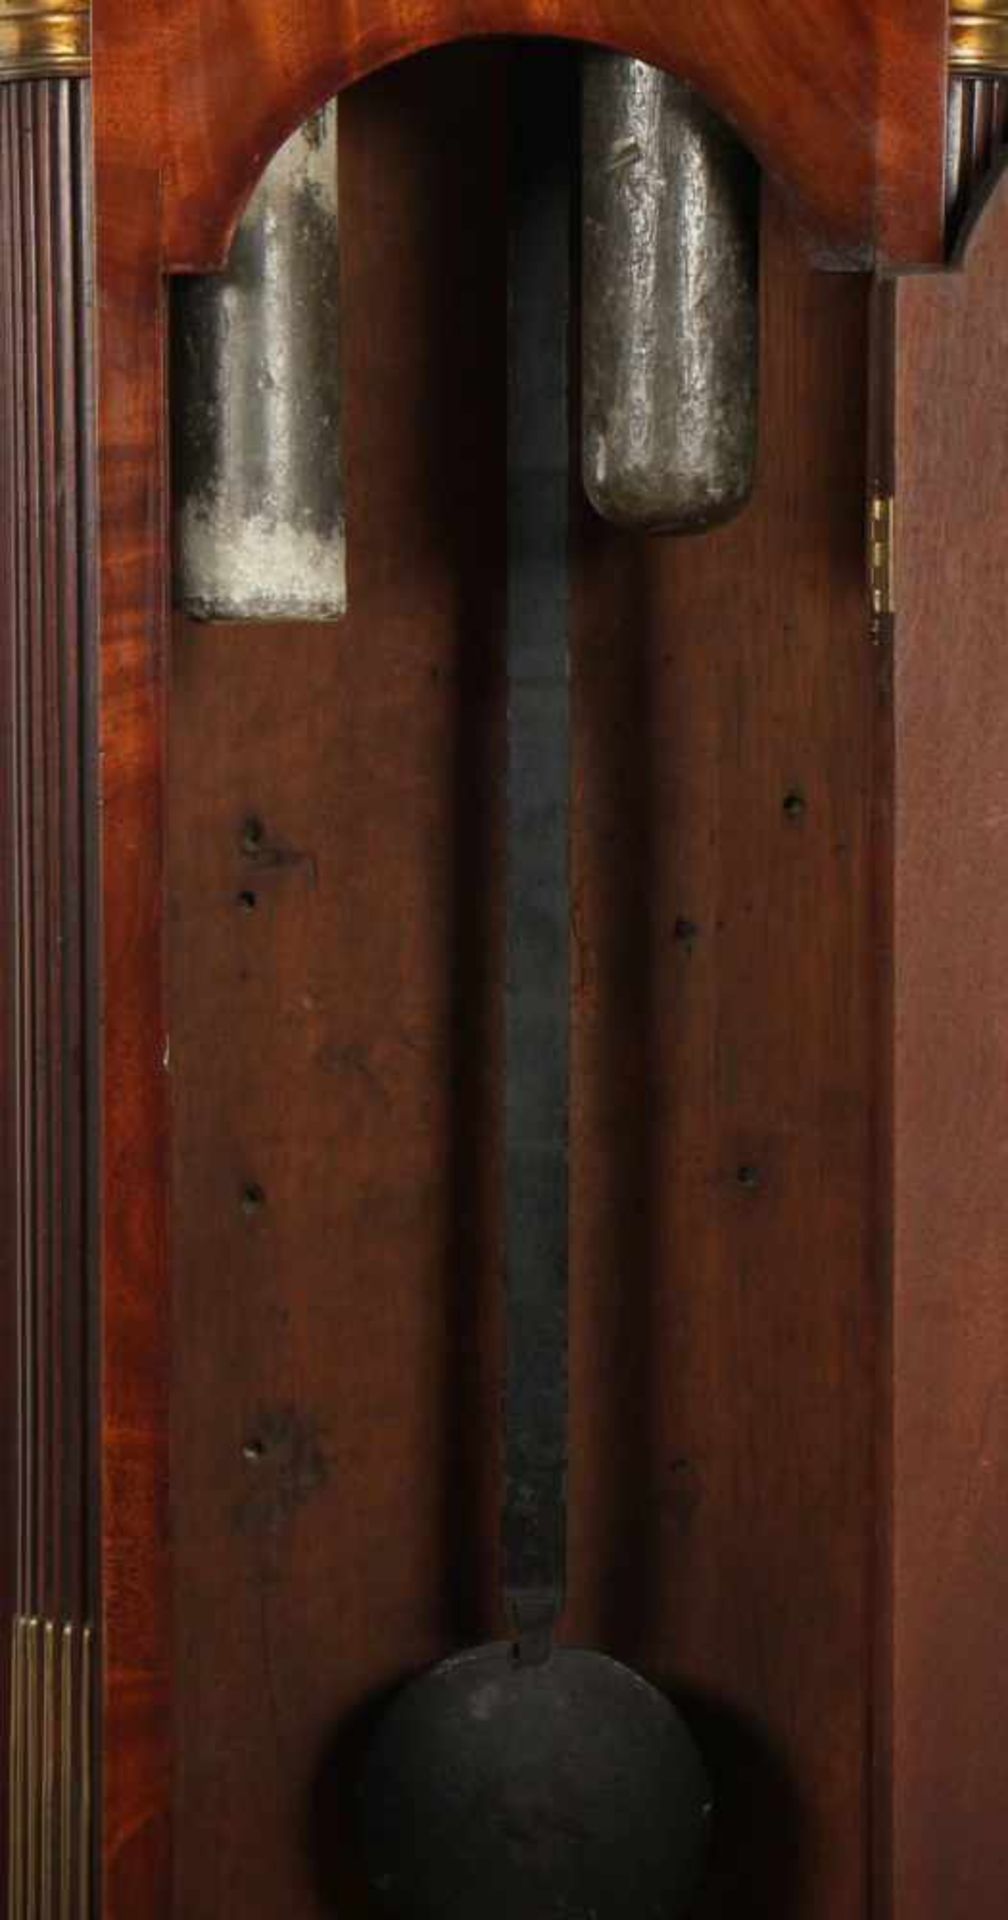 STANDUHR, Mahagoni, Werk mit kleiner Sekunde und Schlag auf Glocke, gangbar, H 241, gemarkt - Bild 3 aus 5